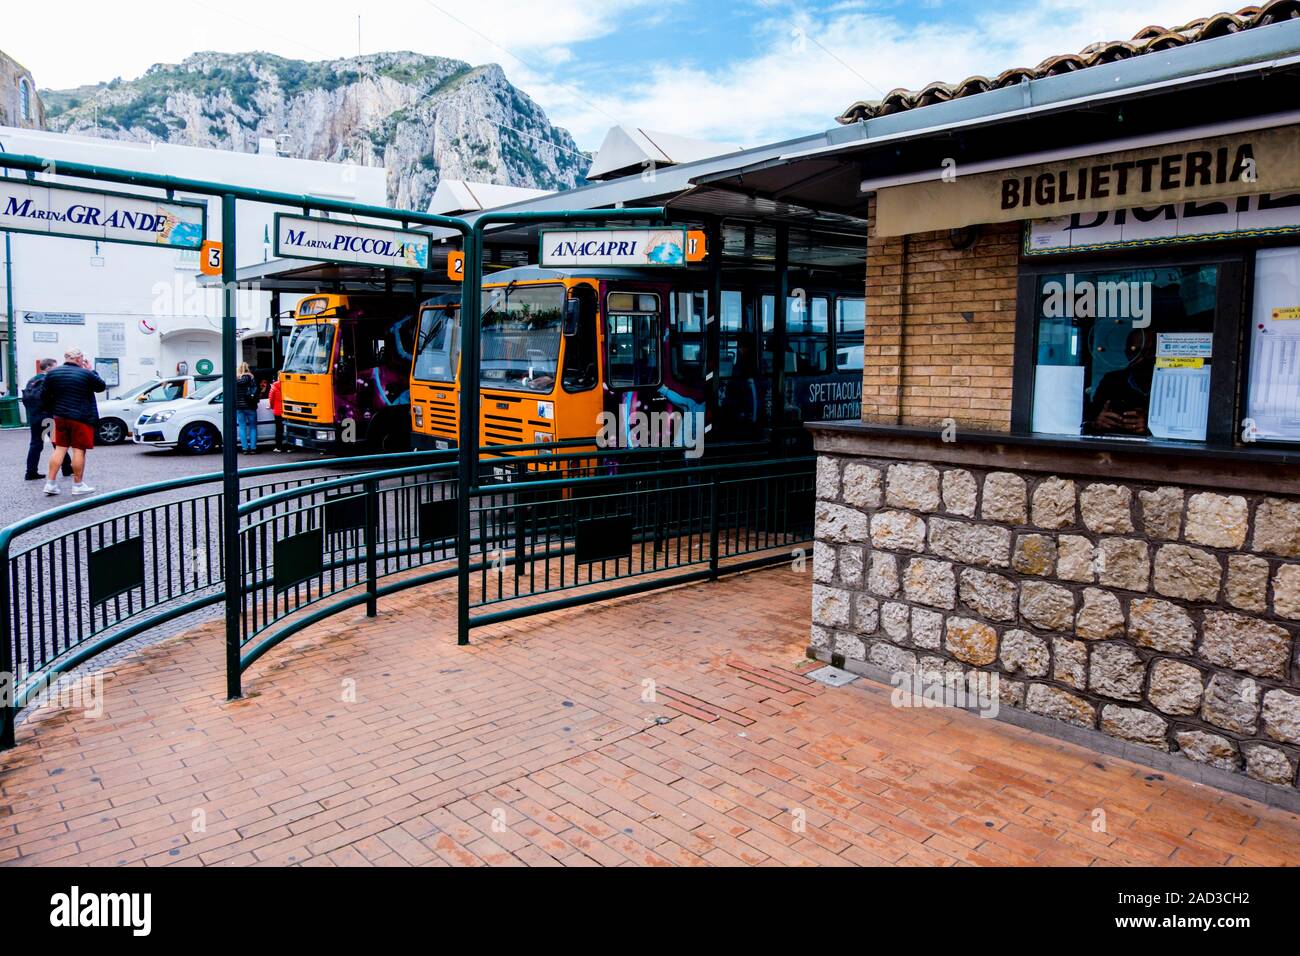 La station de bus, la ville de Capri, Capri, Italie Banque D'Images